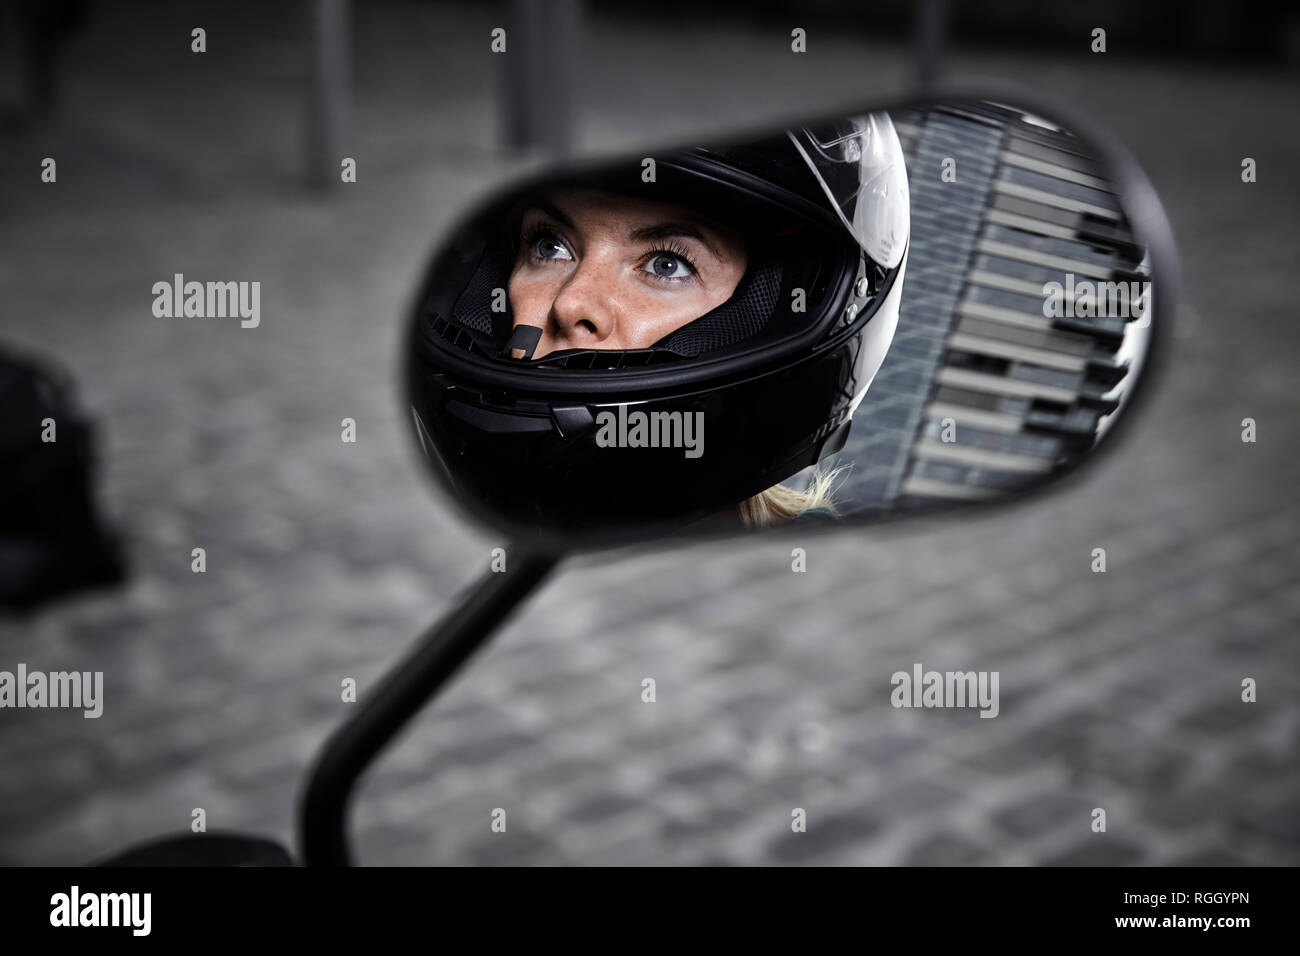 Junge Frau mit Motorrad Helm im Rückspiegel eines Motorrads widerspiegeln Stockfoto